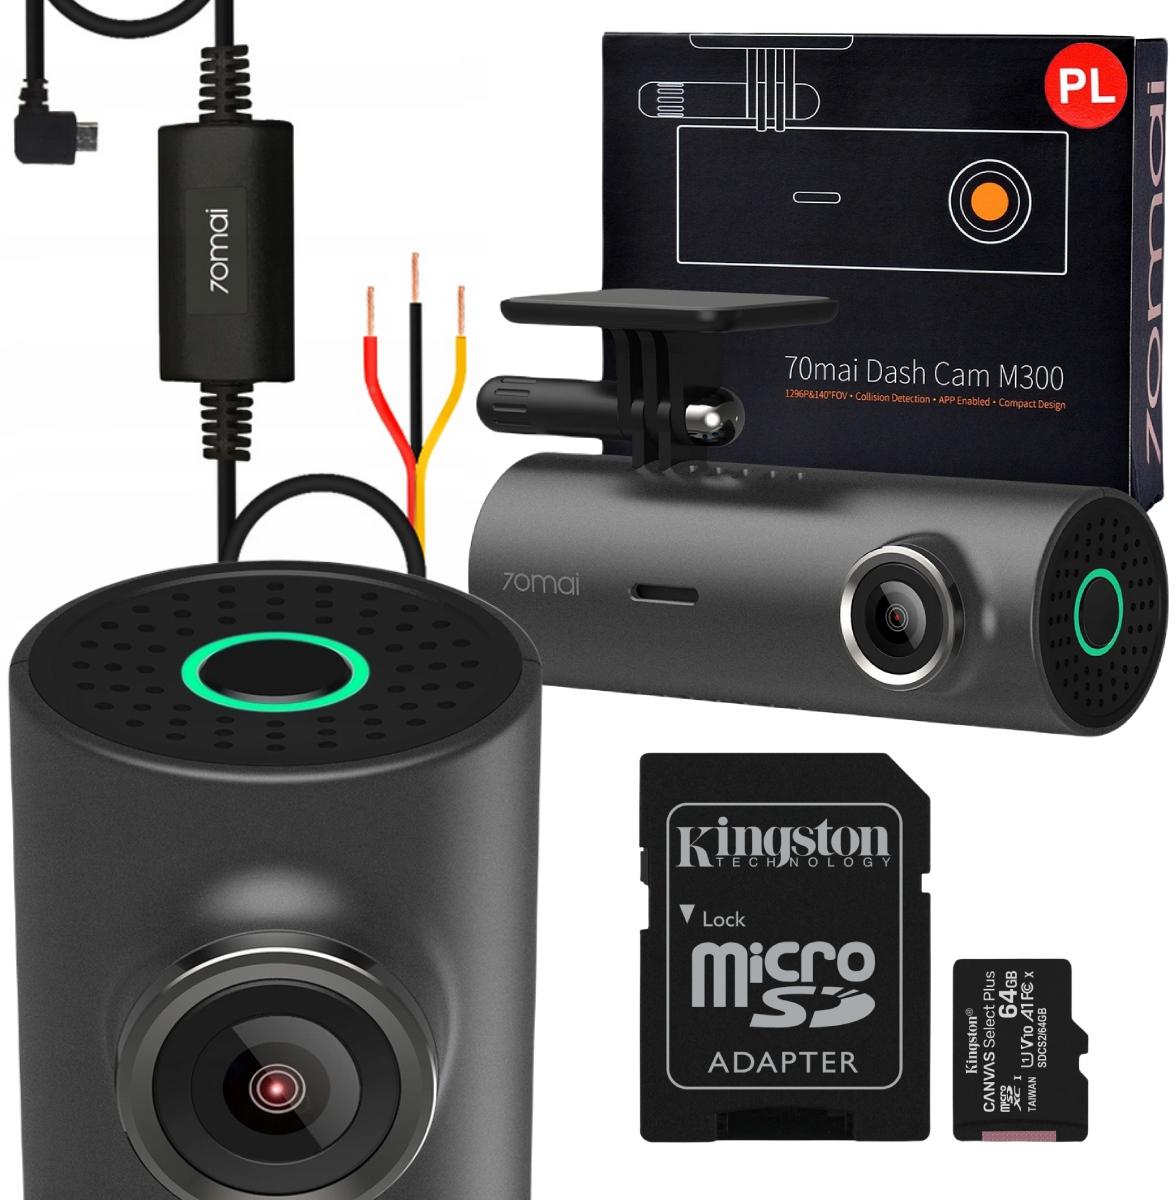 Najważniejsze cechy zestawu wideorejestrator 70mai Dash Cam M300 + zasilanie trybu parkingowego HARDWARE KIT 70mai Midrive UP02 + karta pamięci Kingston 64 GB: